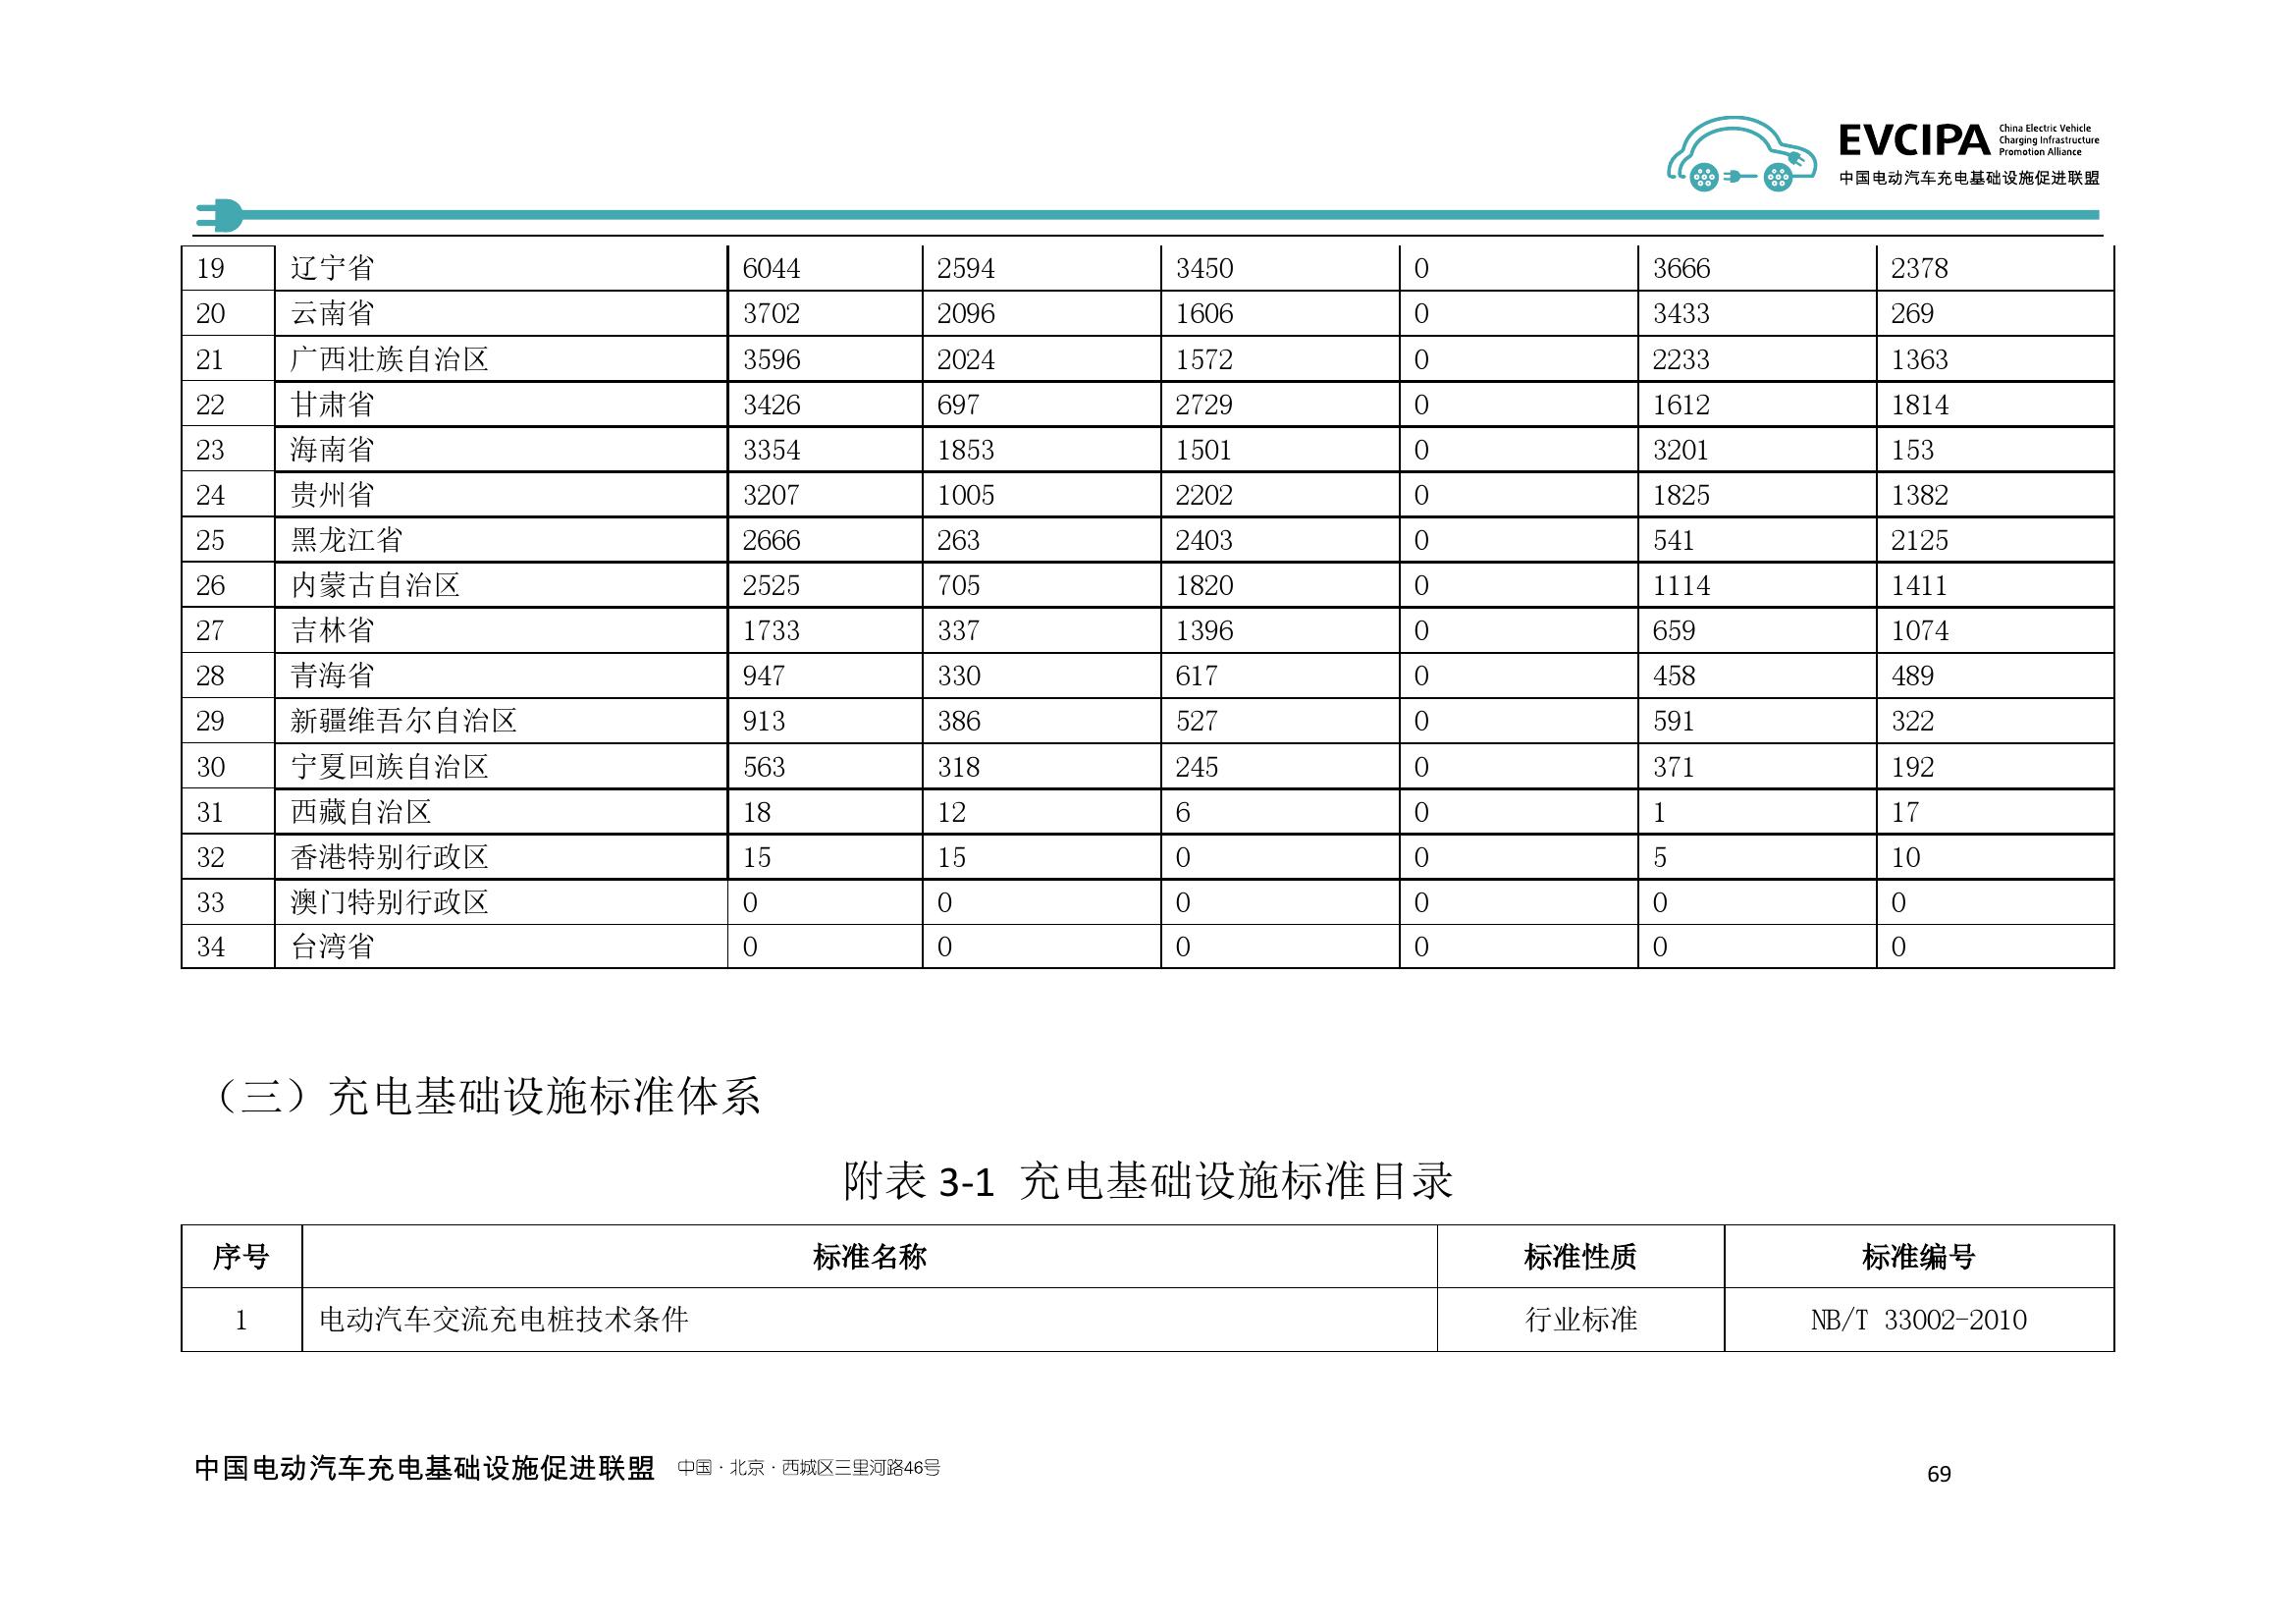 2019-2020年度中国充电基础设施发展报告_000077.jpg